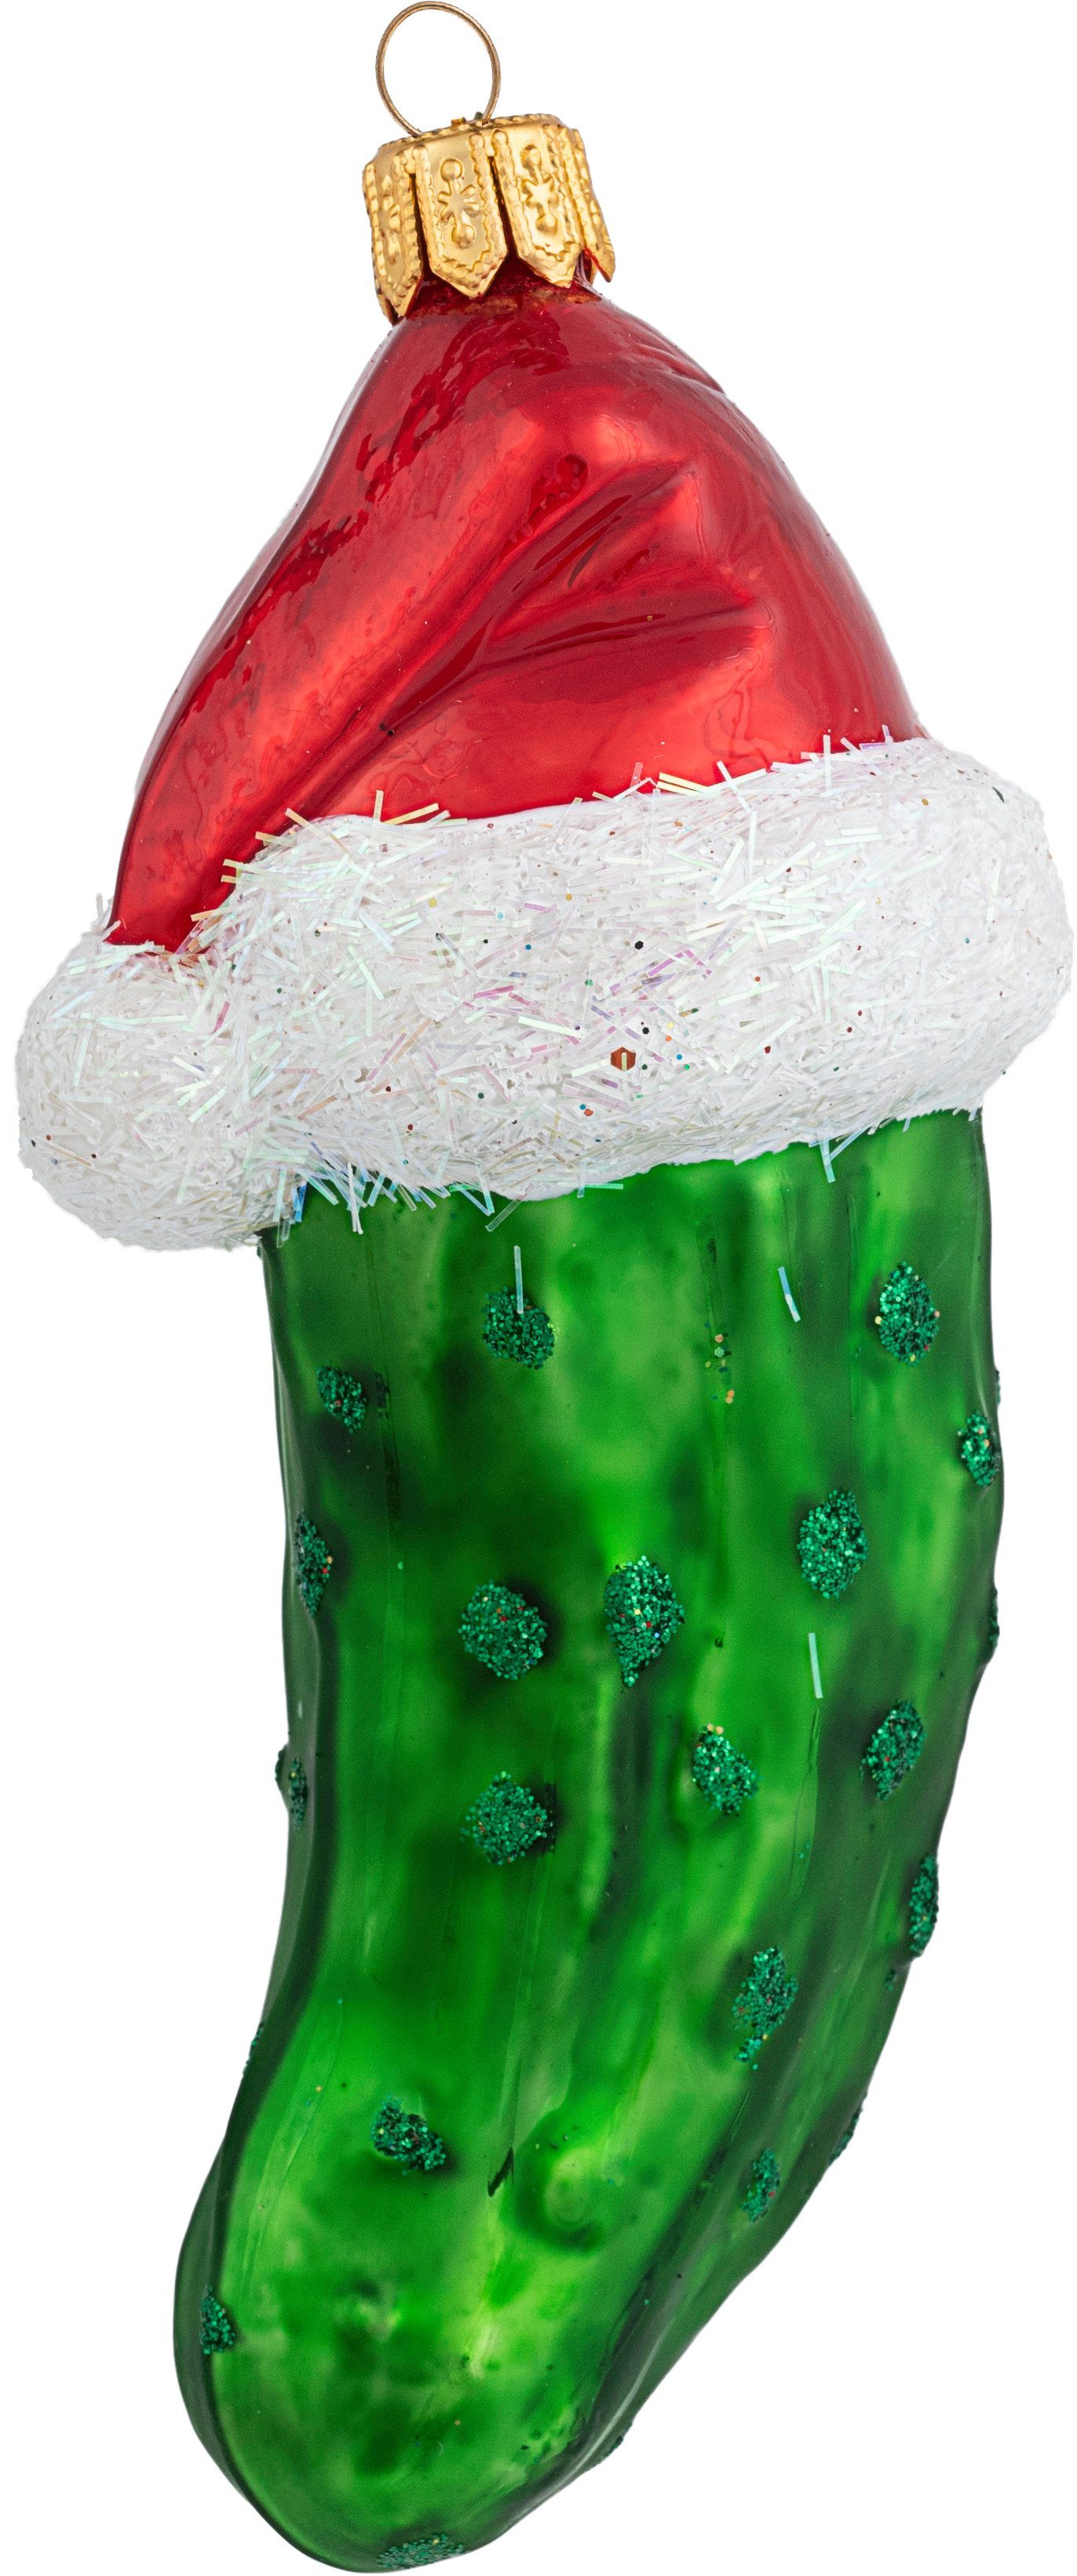 IMPULS Christbaumschmuck, 10cm Glas mit Christbaumschmuck Weihnachtsgurke grün Mütze